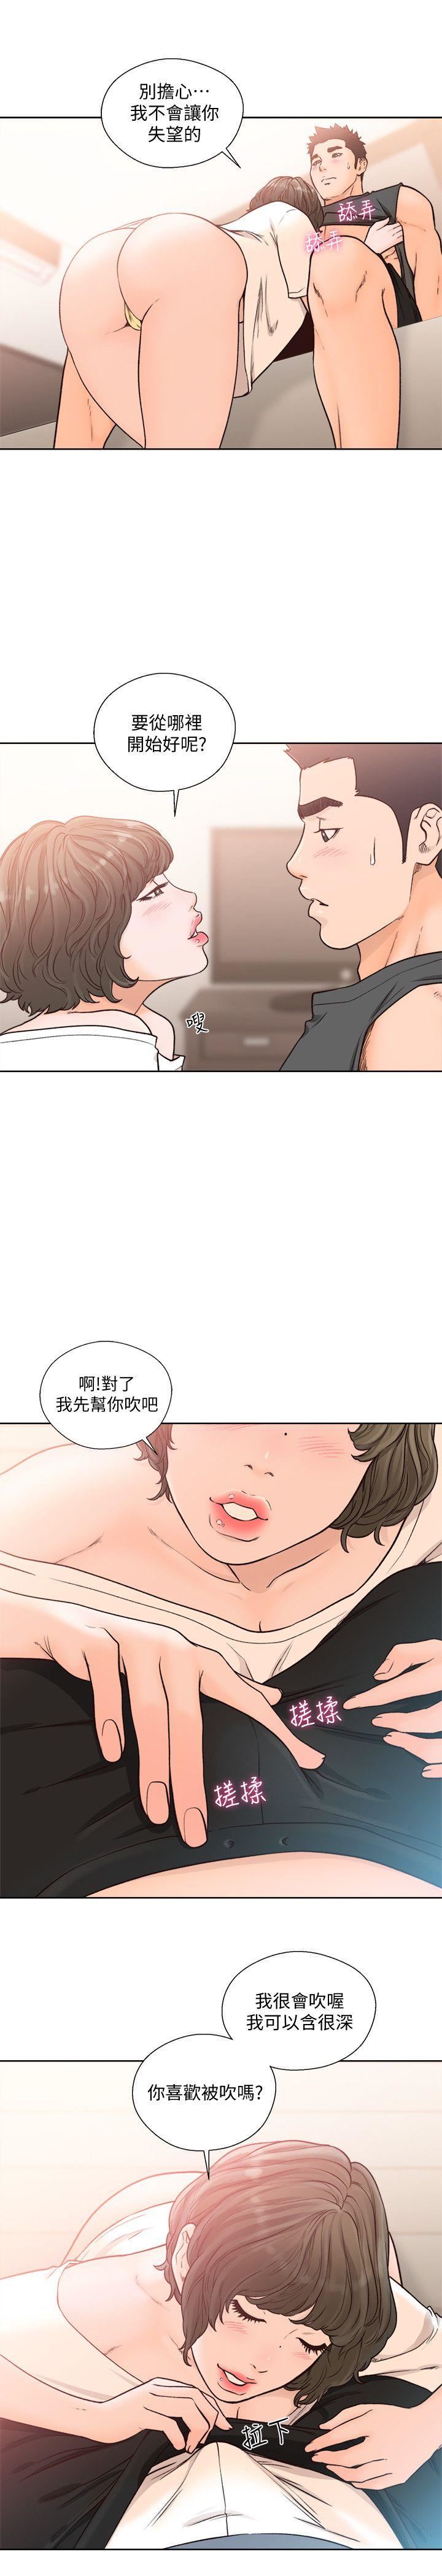 韩国污漫画 解禁:初始的快感 第92话-令人沉溺的新滋味 14